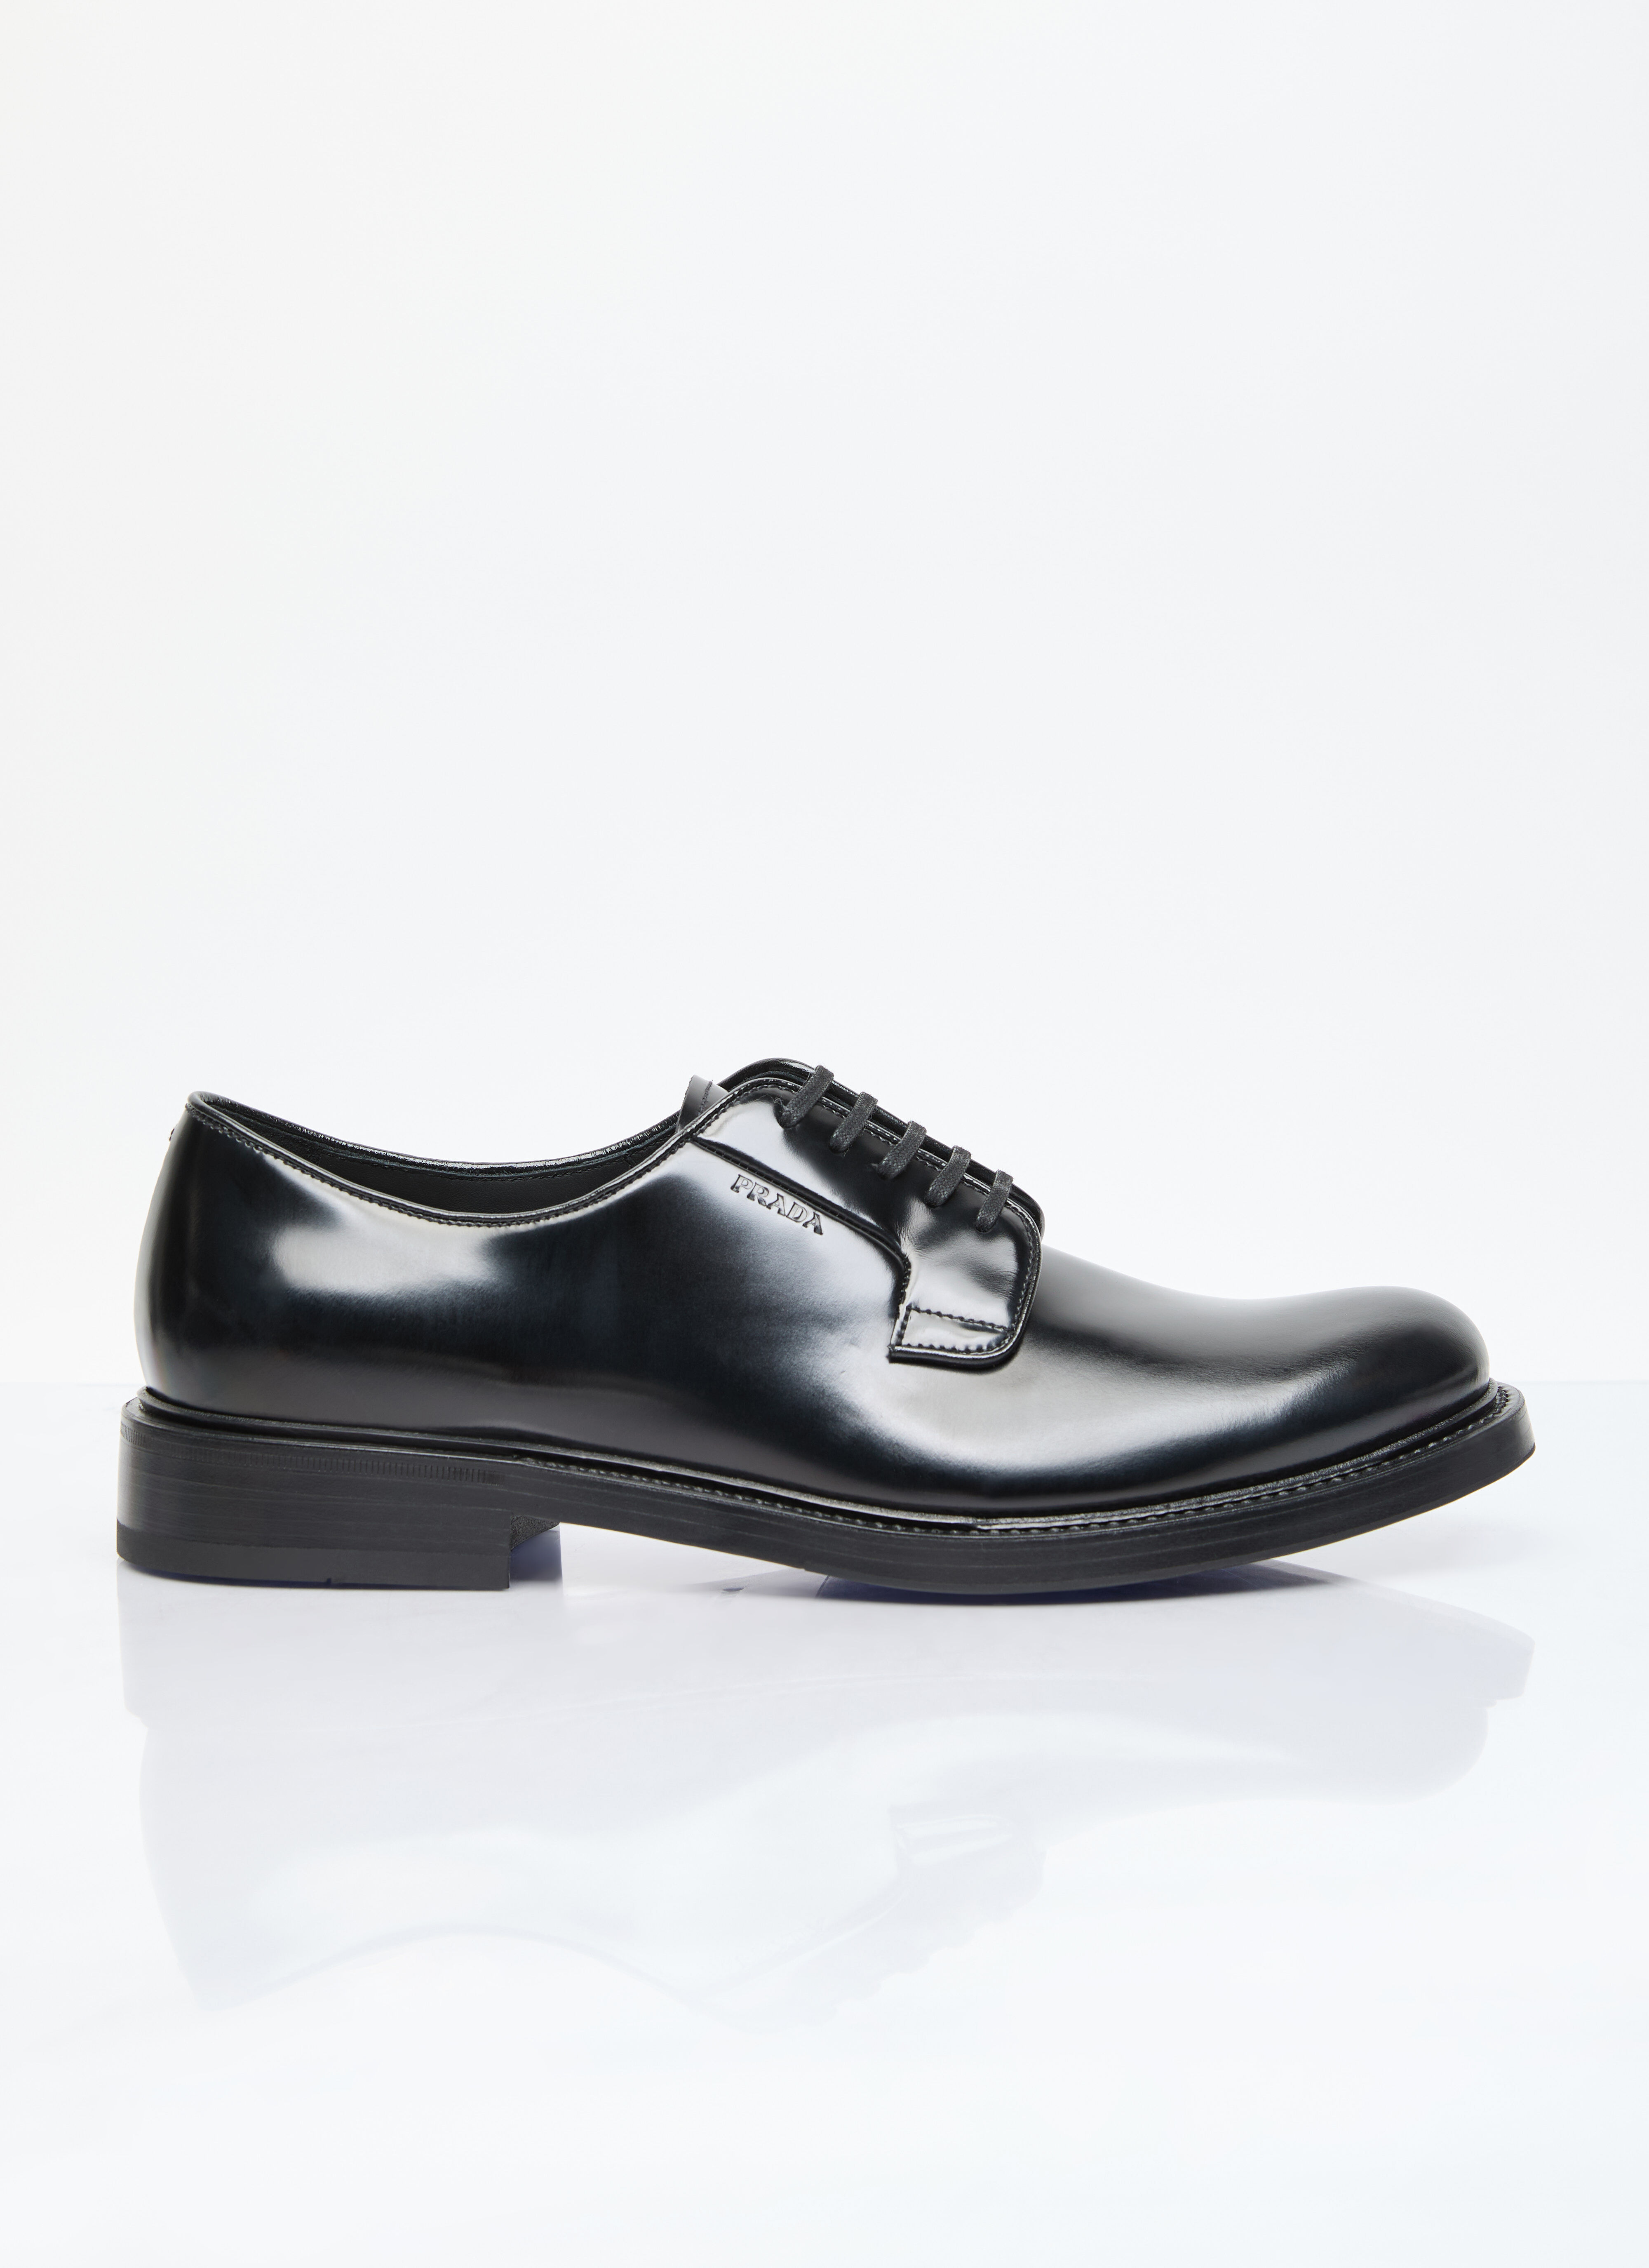 Prada Brushed Leather Lace-Up Shoes Black pra0155024